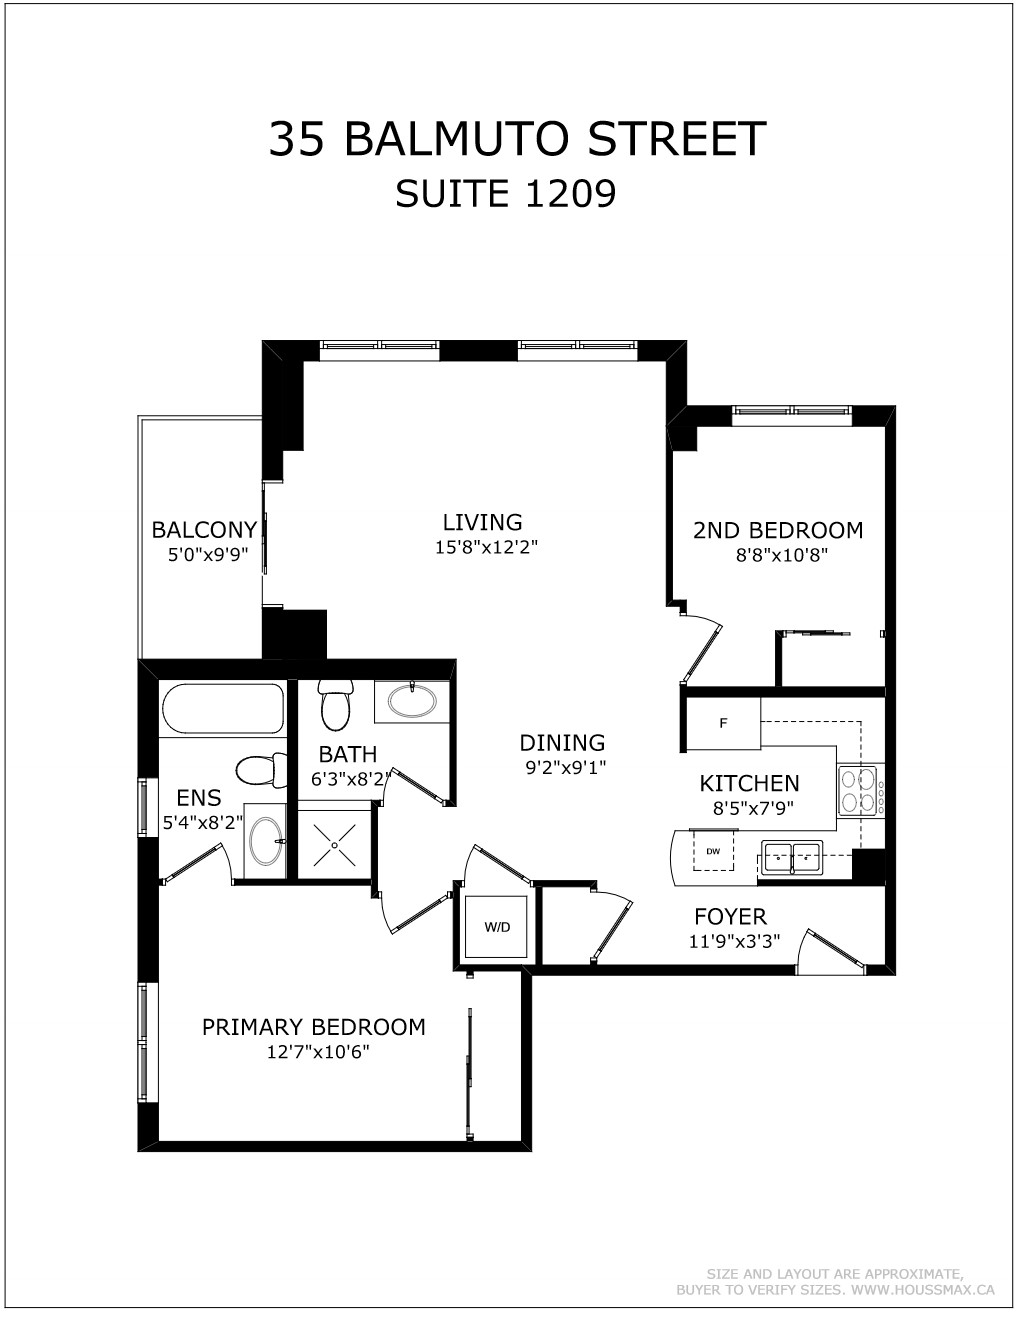 Floor plans for 35 Balmuto St Unit 1209.